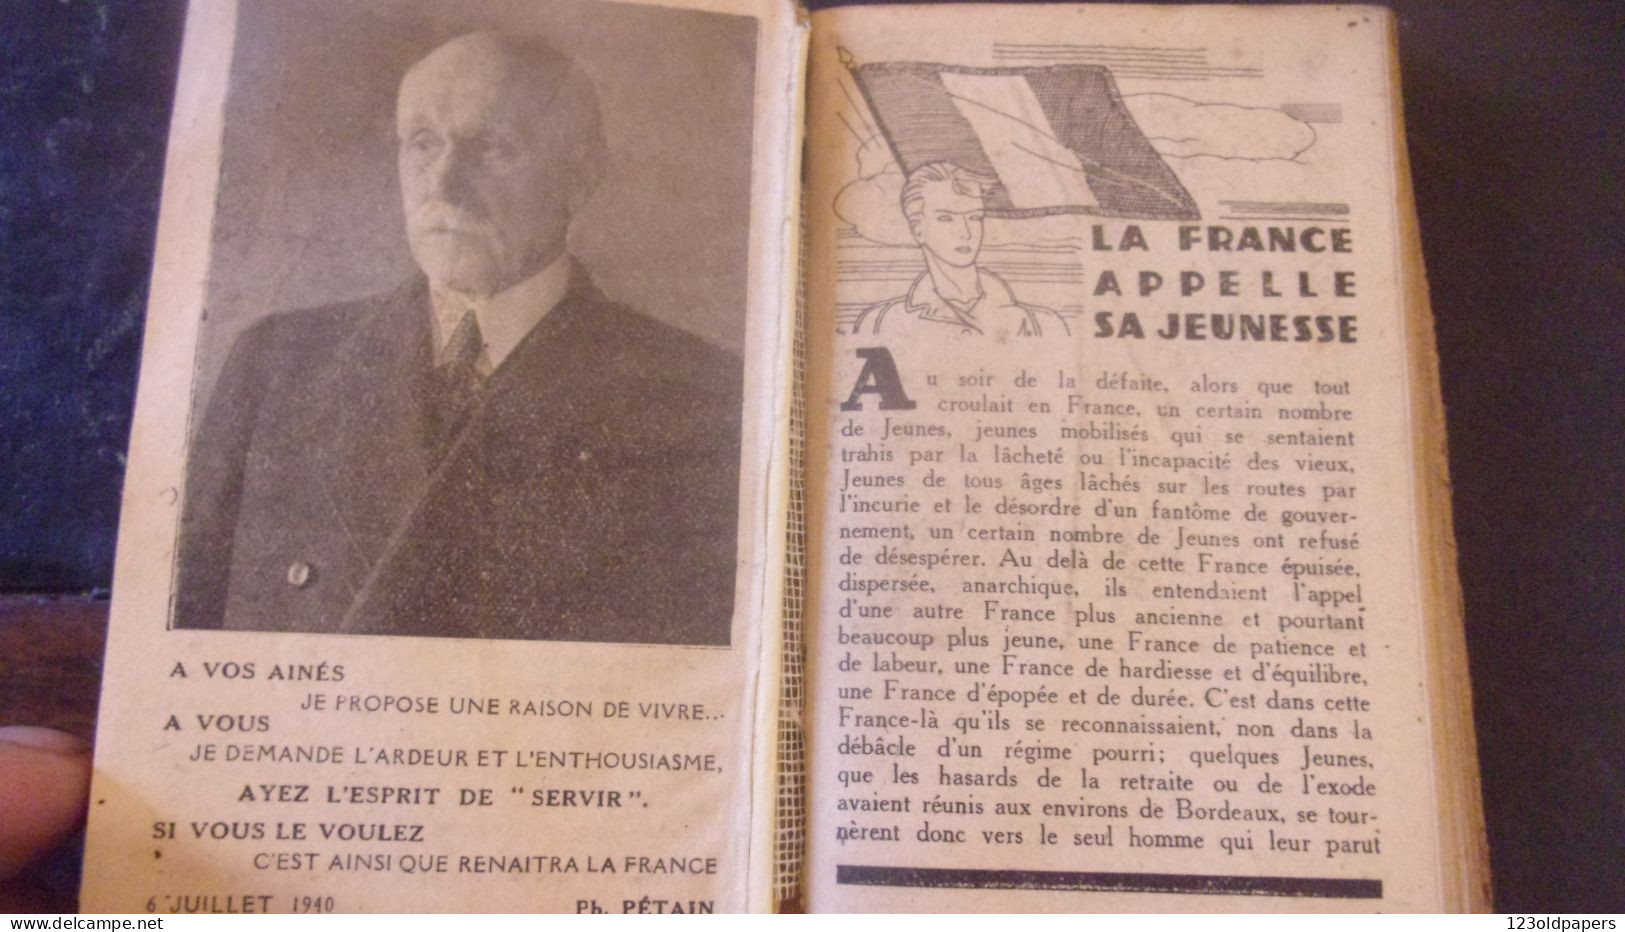 Agenda De La Jeunesse 1941 SCOUTISME PETAIN - 1939-45